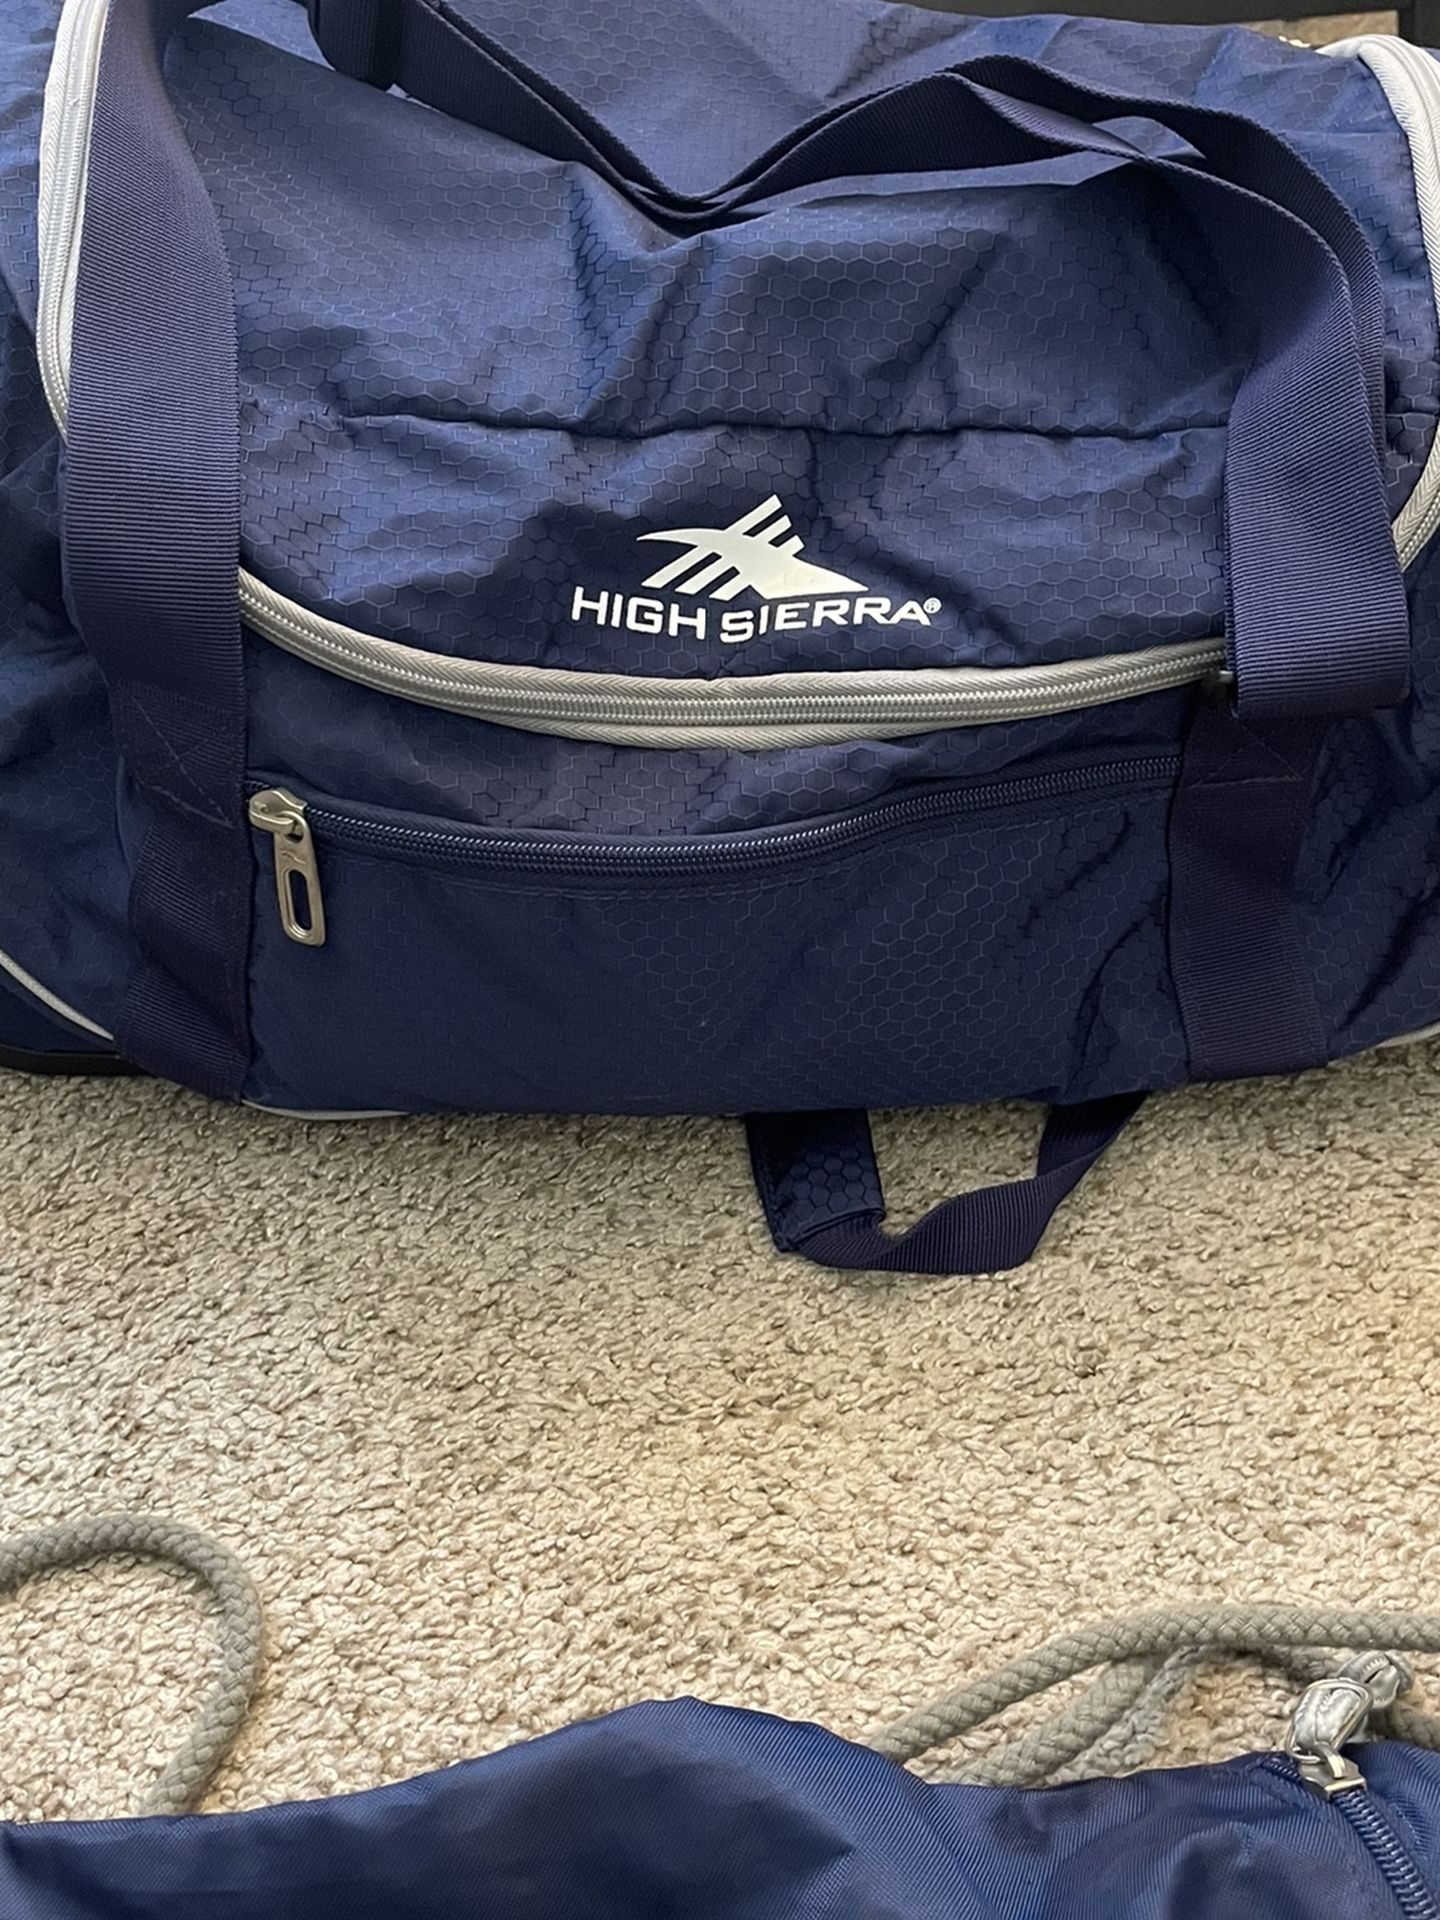 High Sierra Duffle Bag